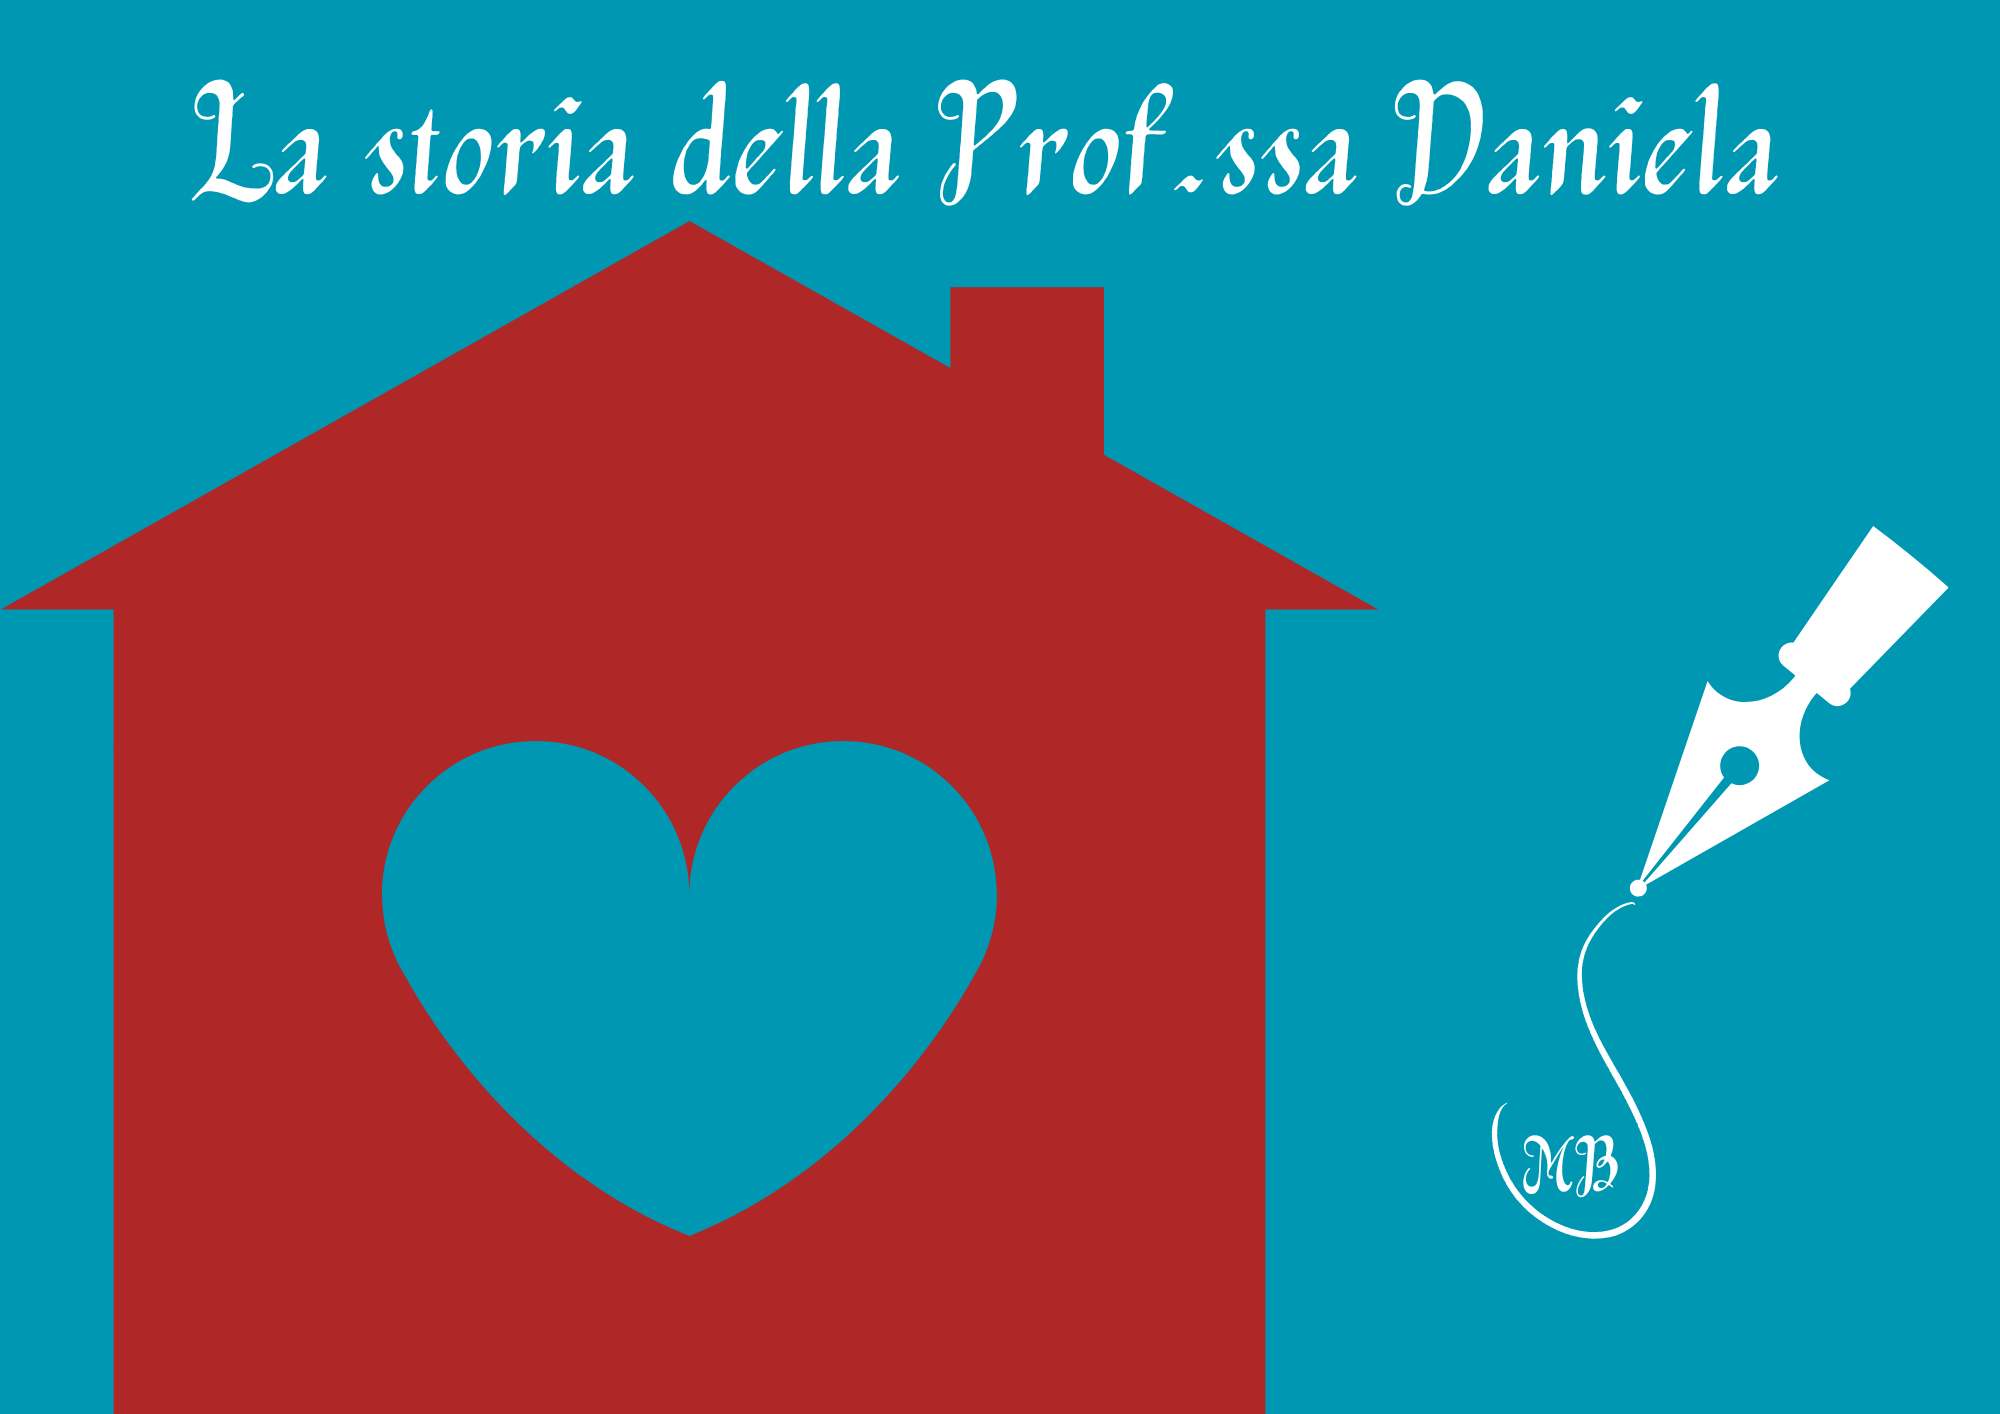 La storia della prof.ssa Daniela